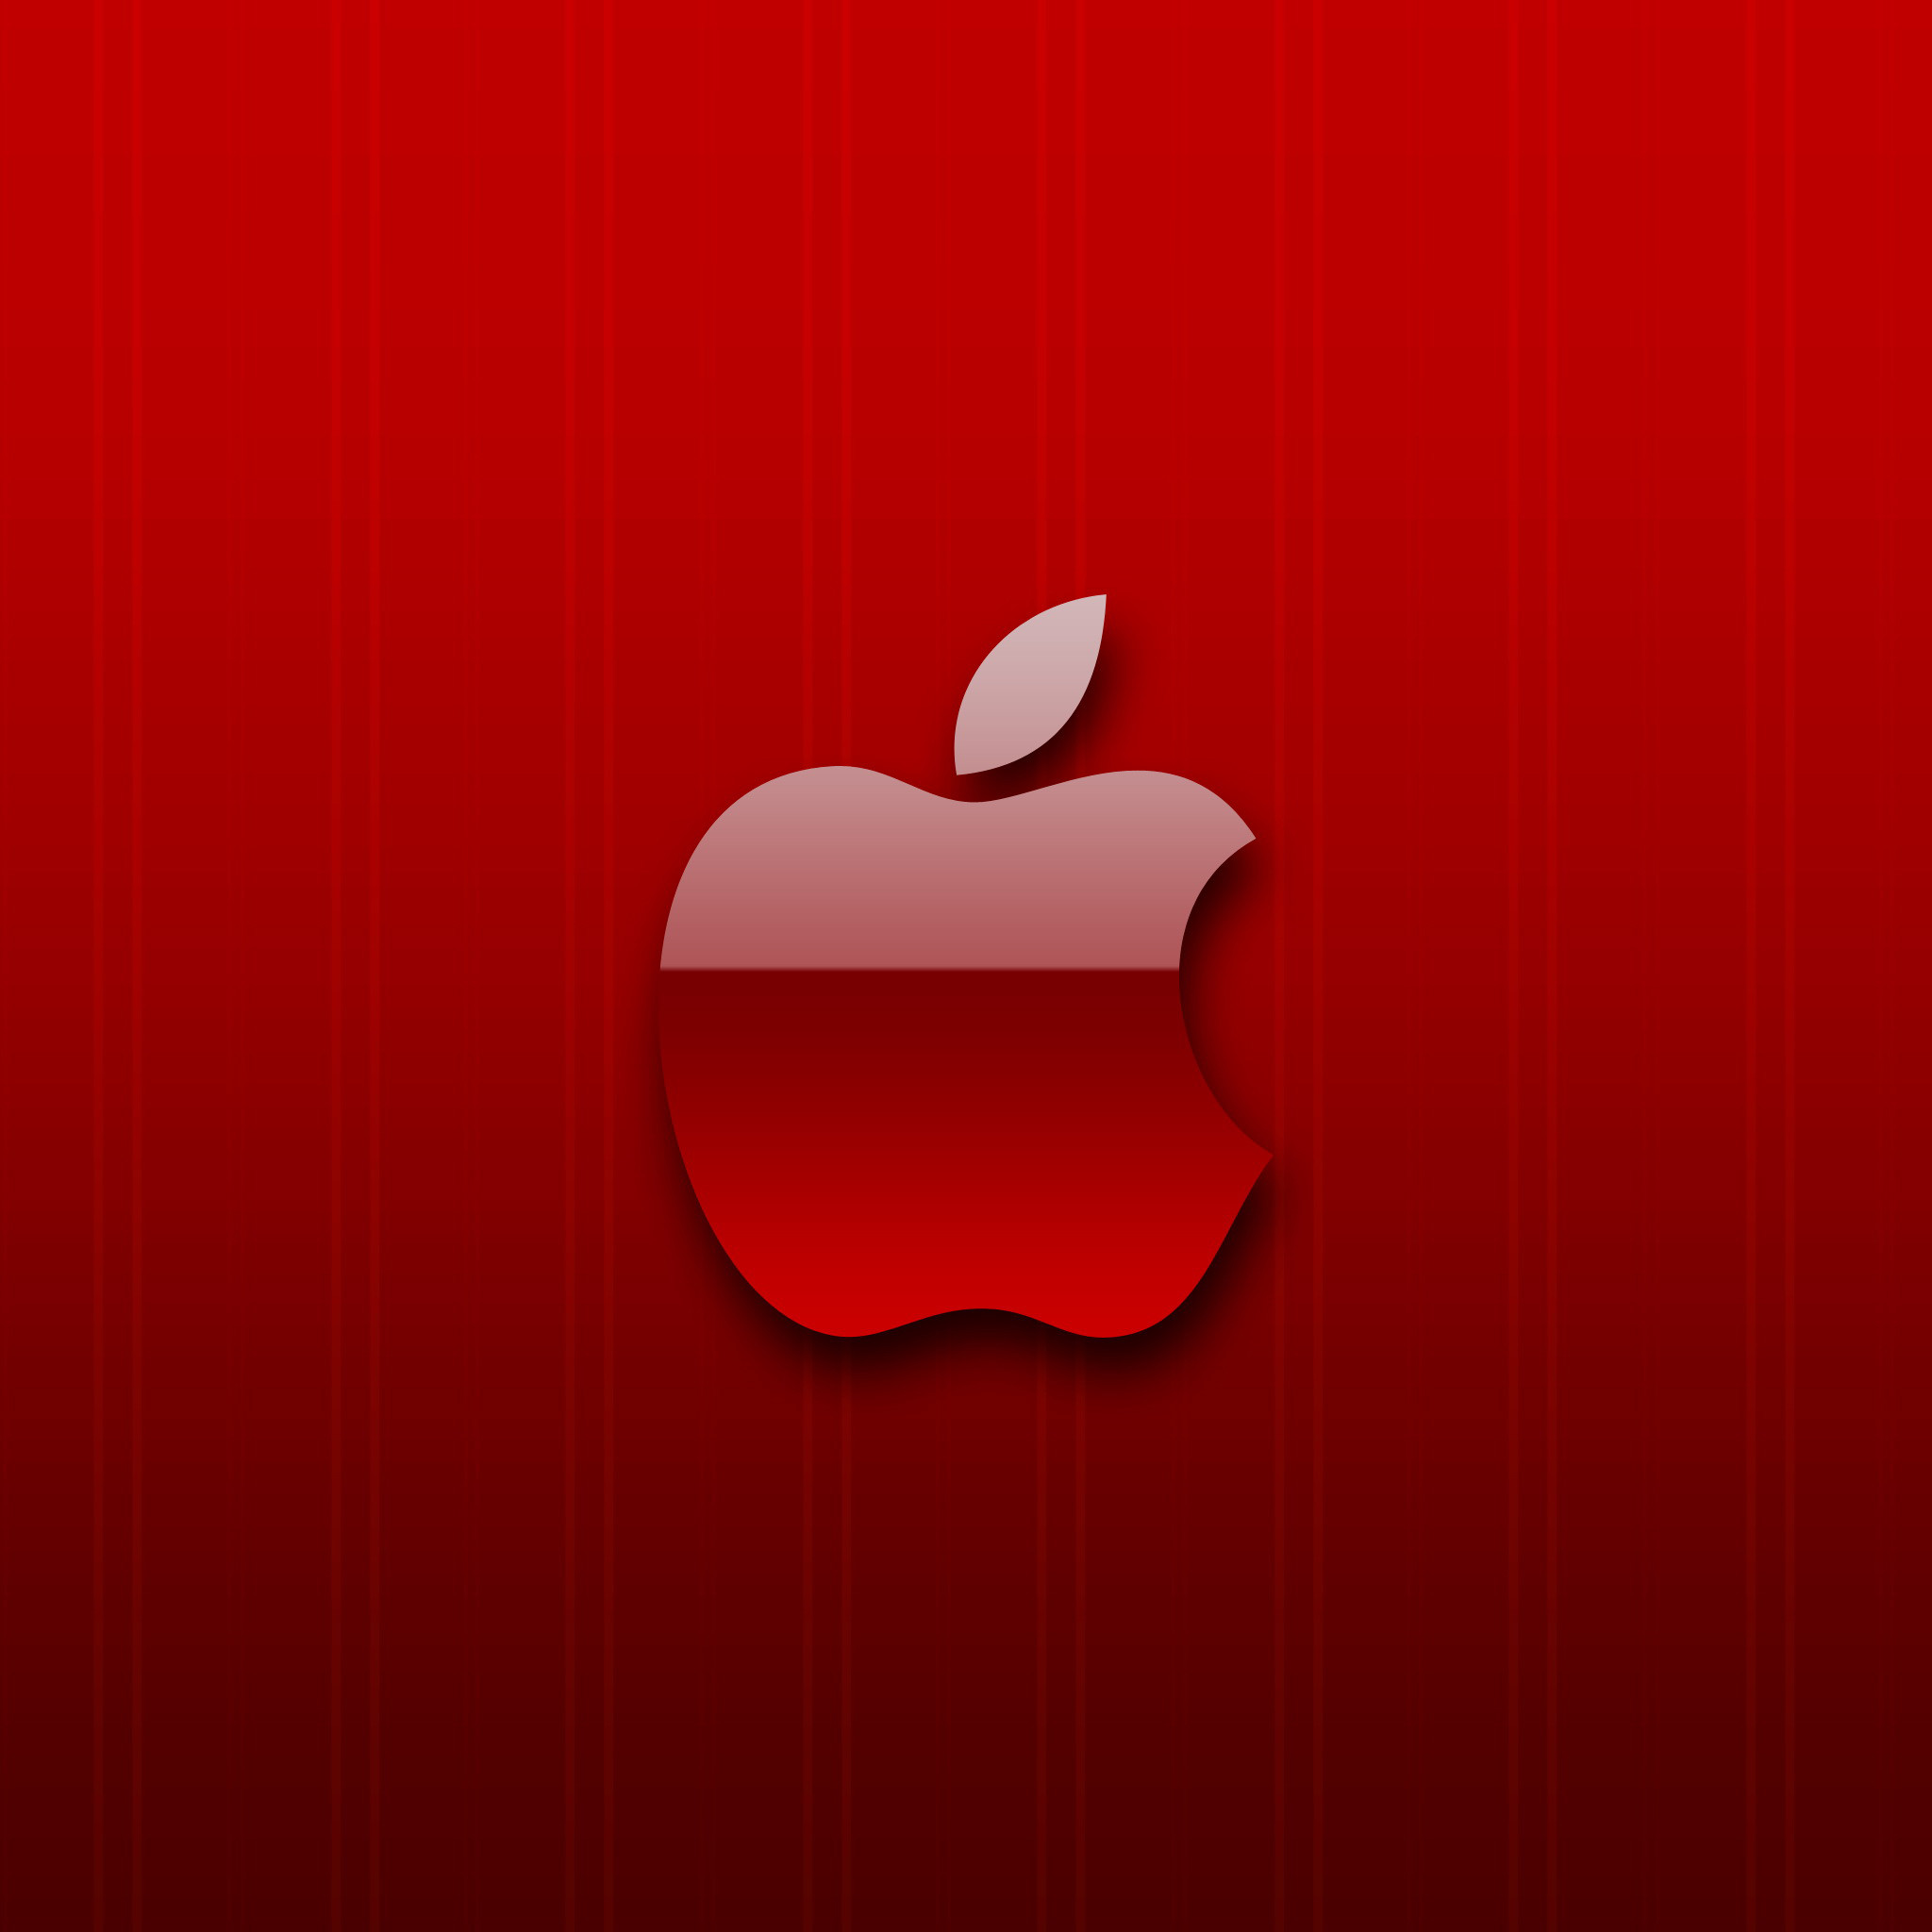 apple wallpaper hd,rosso,cuore,grafica,frutta,pianta